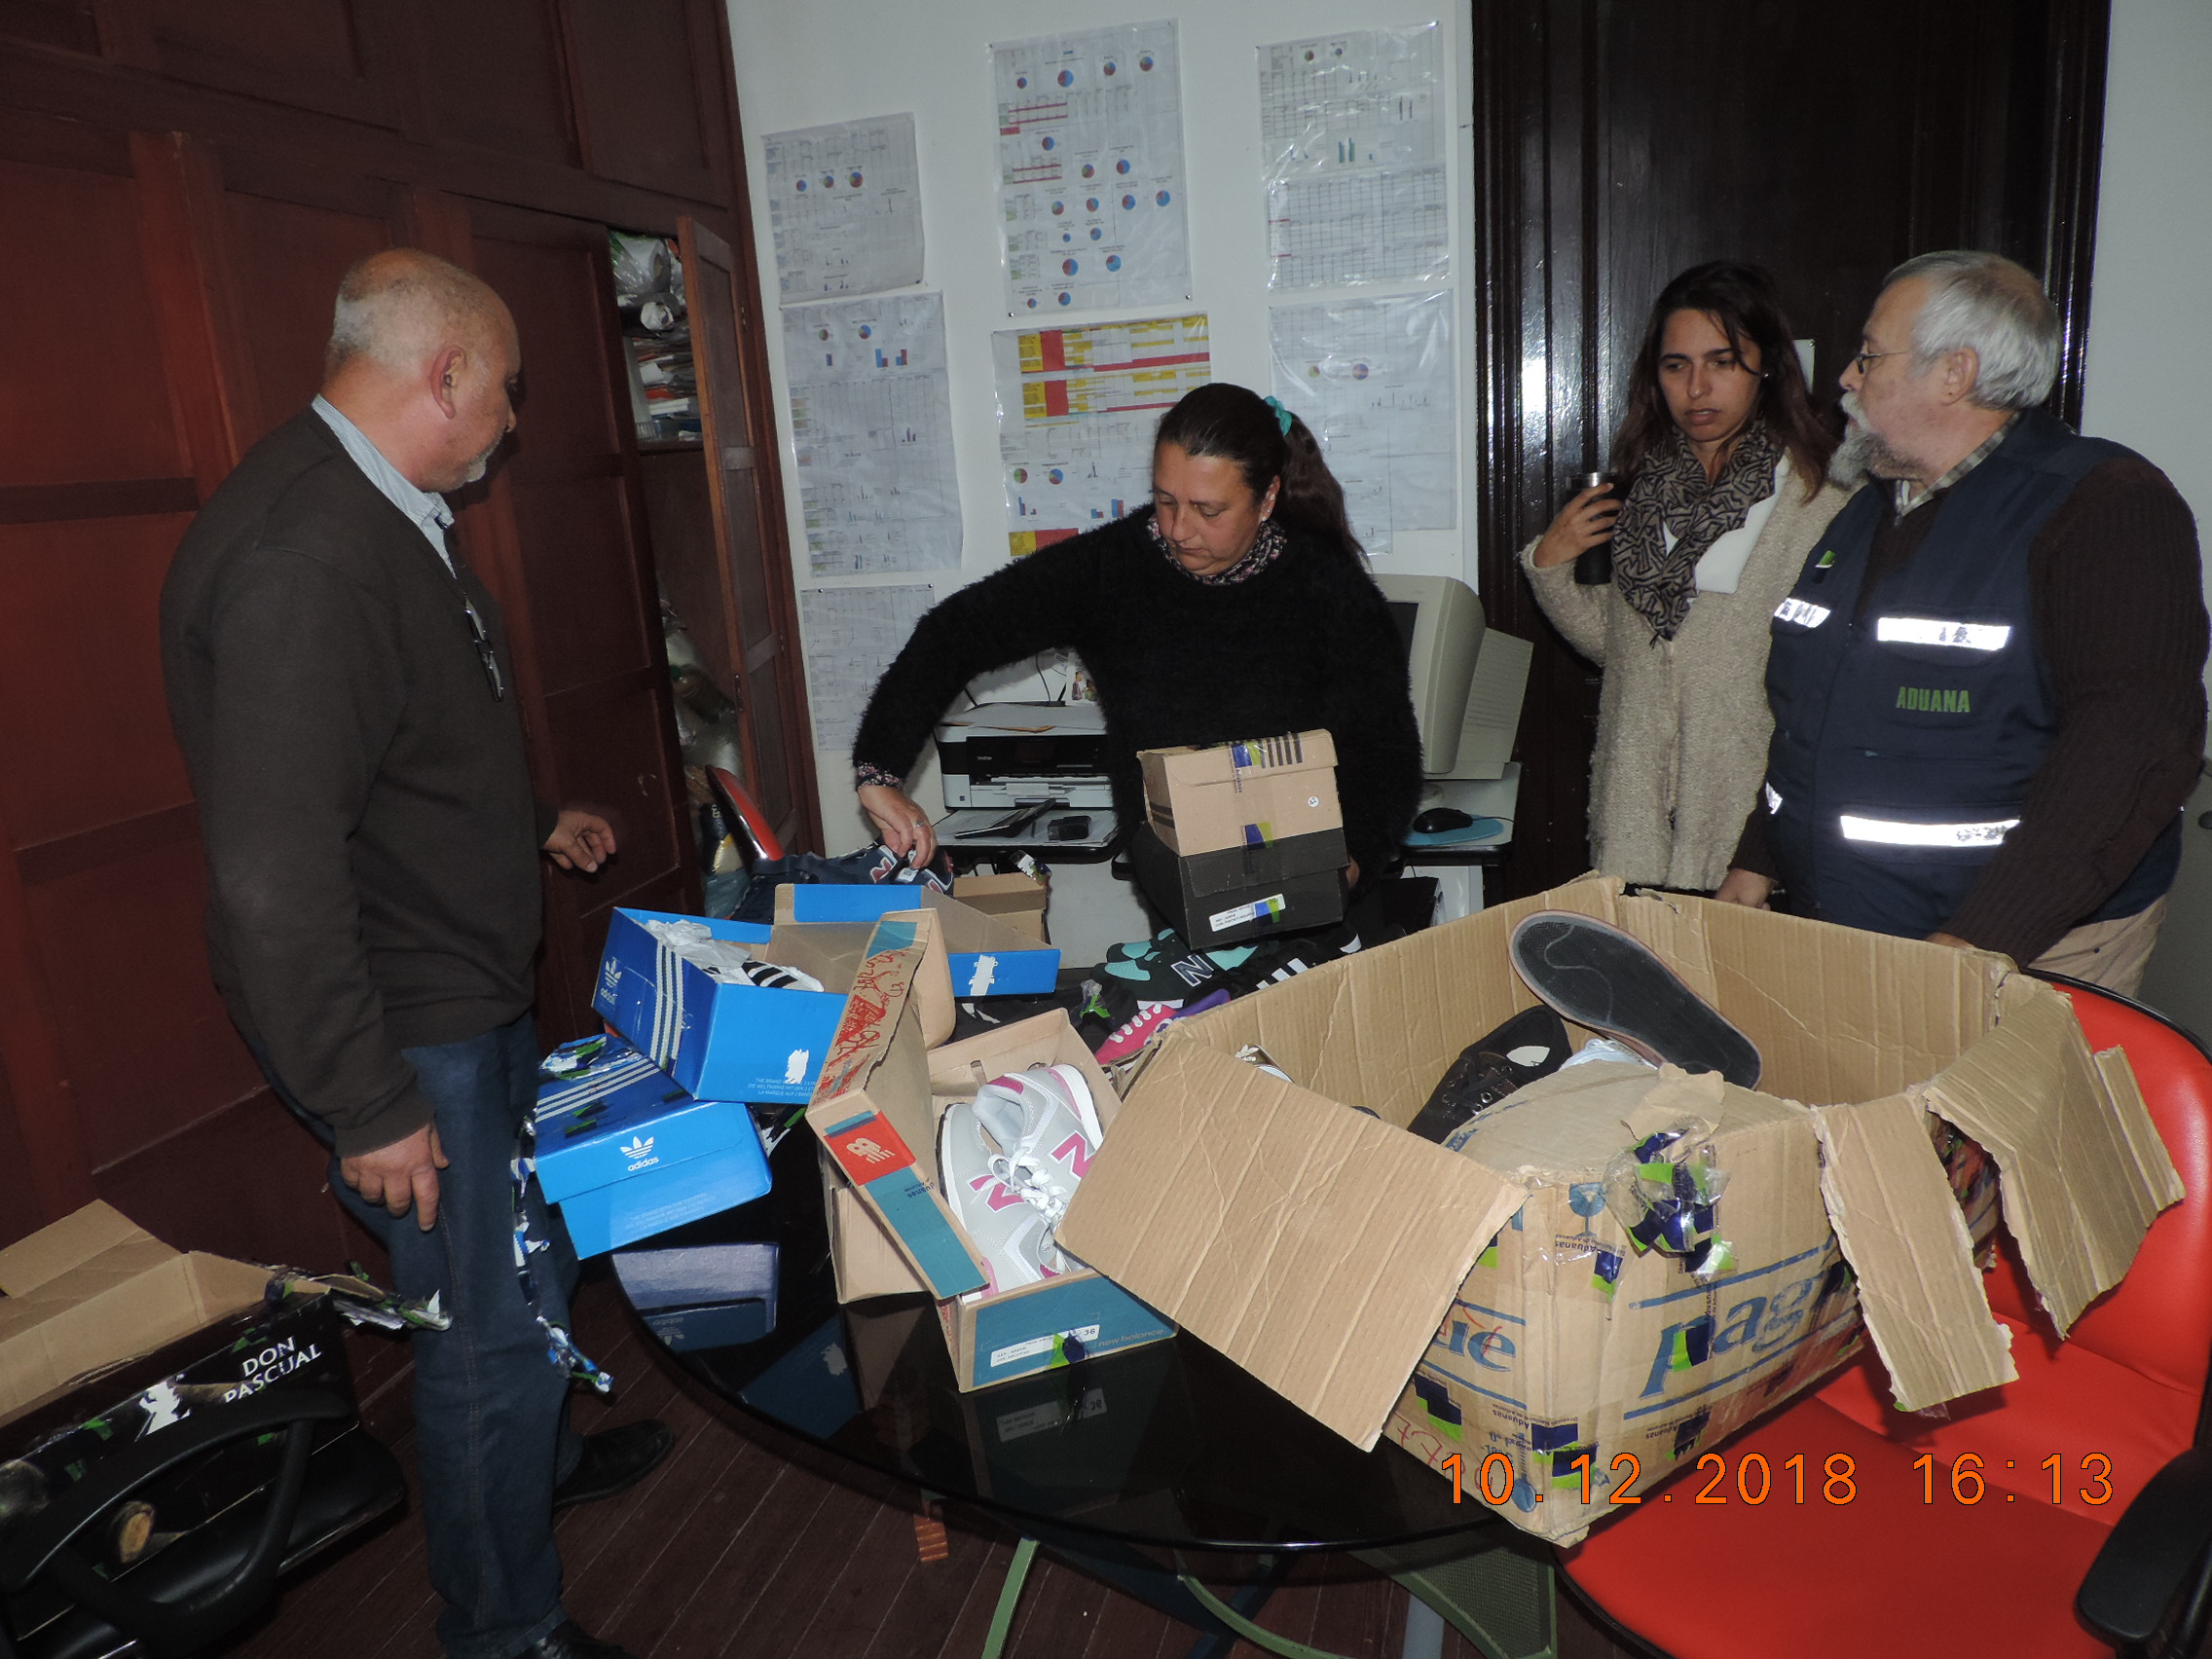 Imagen de funcionario aduanero entregando artículos donados.